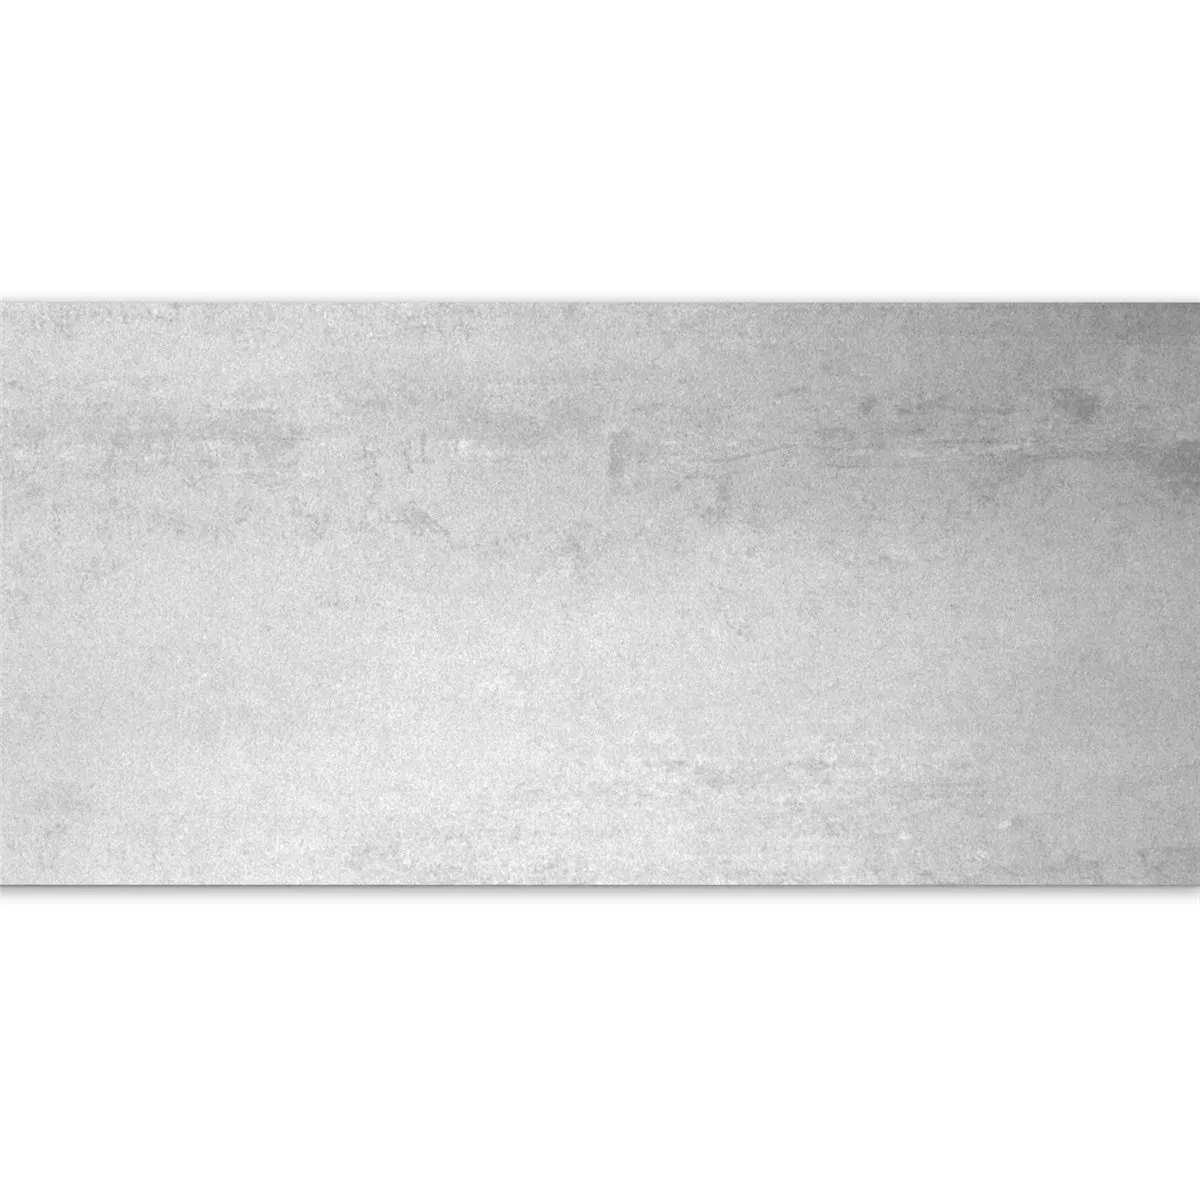 Ladrilhos Madeira Parcialmente Polido Branco 30x60cm